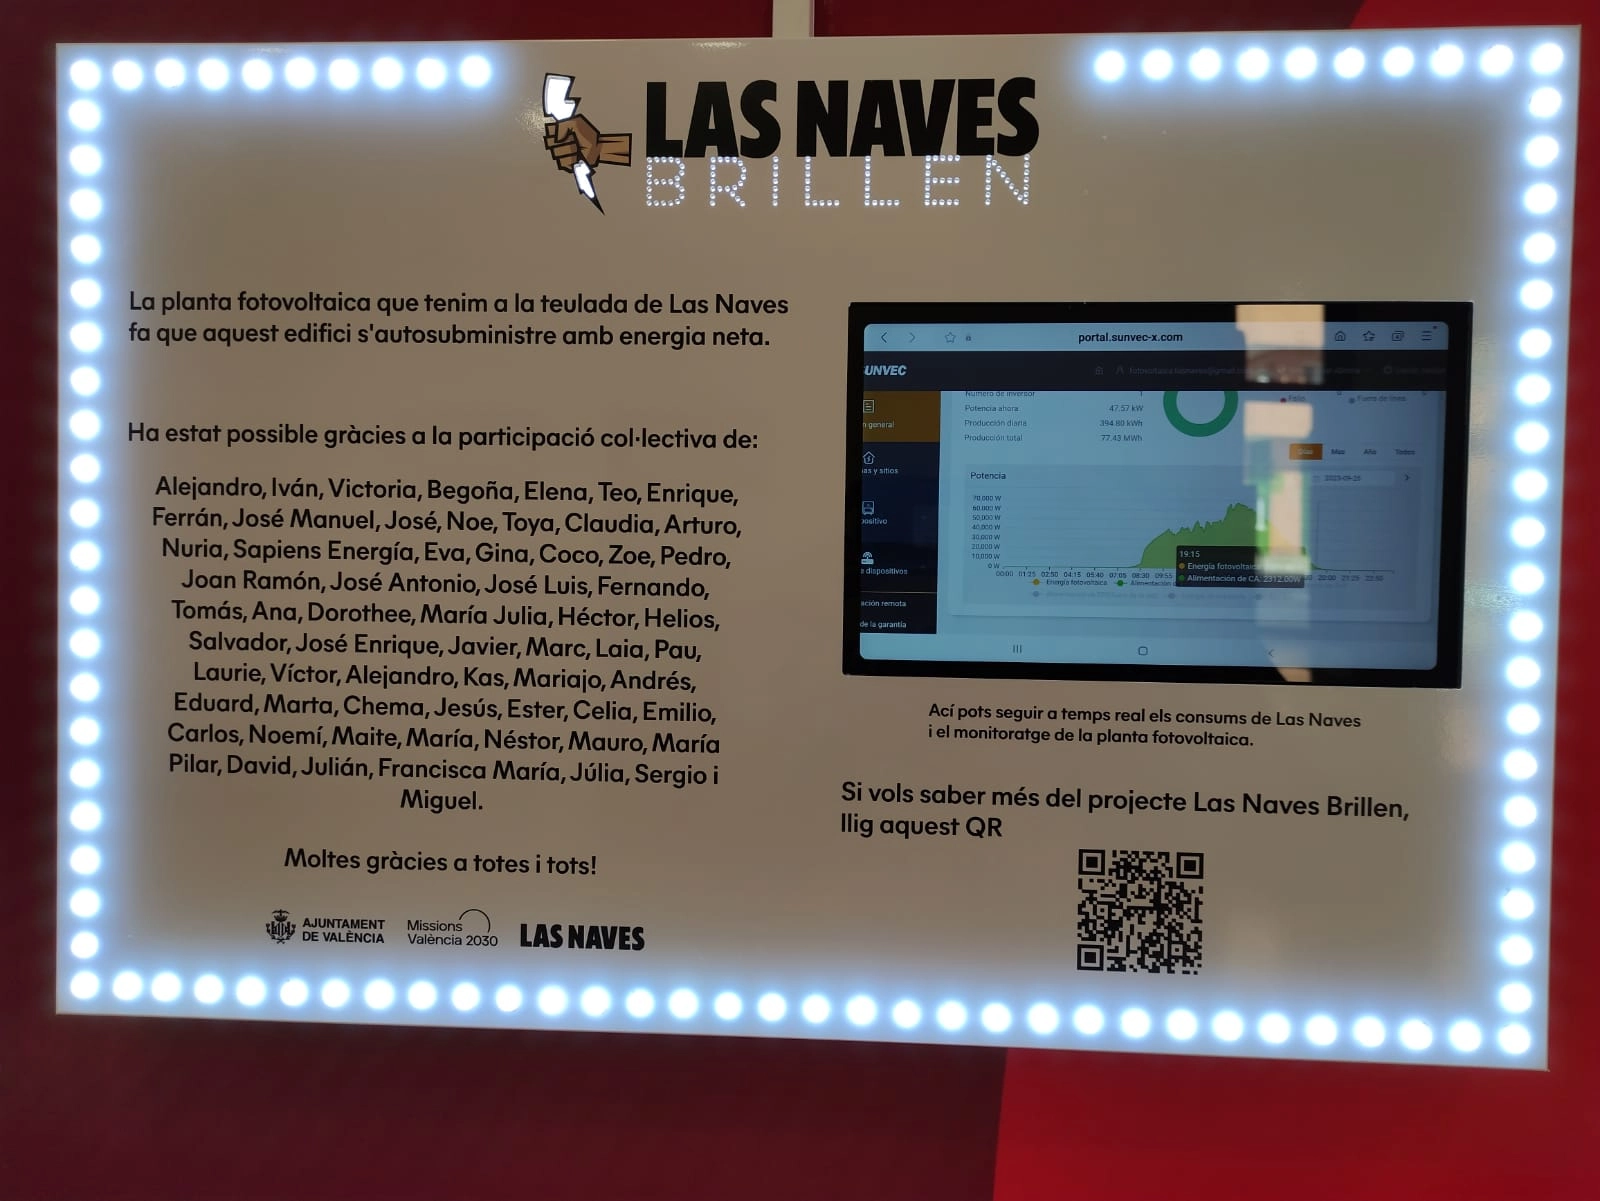 Fotografia de la placa informativa de Las Naves Brillen